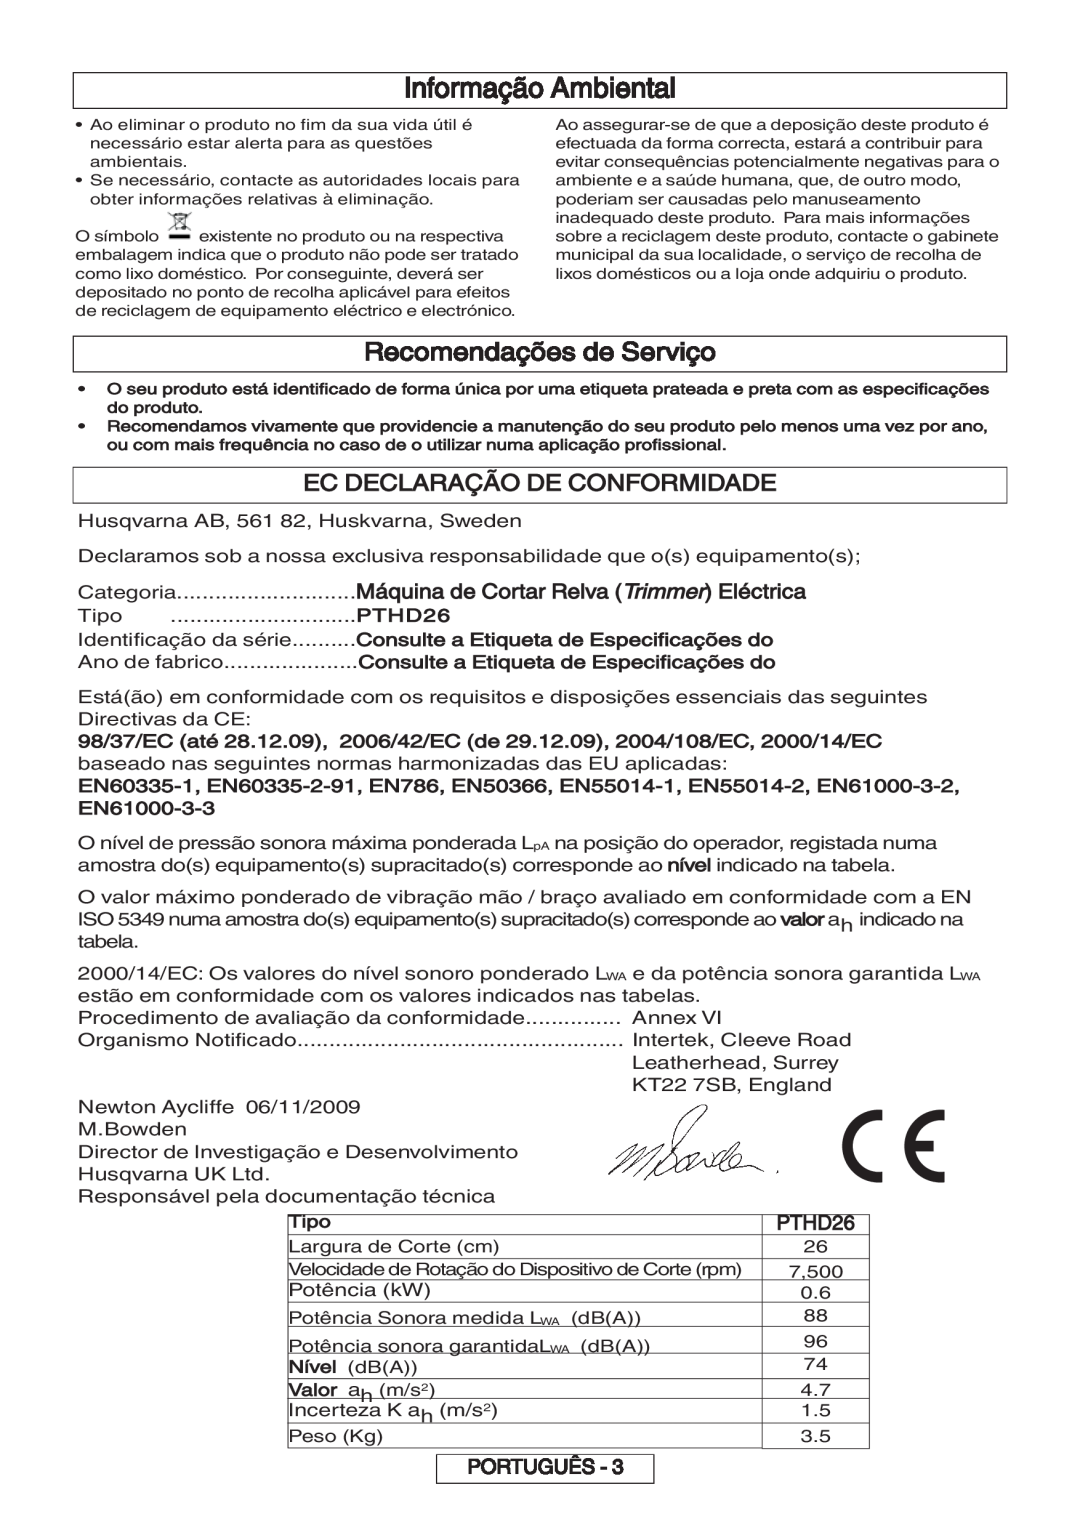 Flymo 600 HD manual Informação Ambiental, Recomendações de Serviço, Ec Declaração De Conformidade, PTHD26, Português 